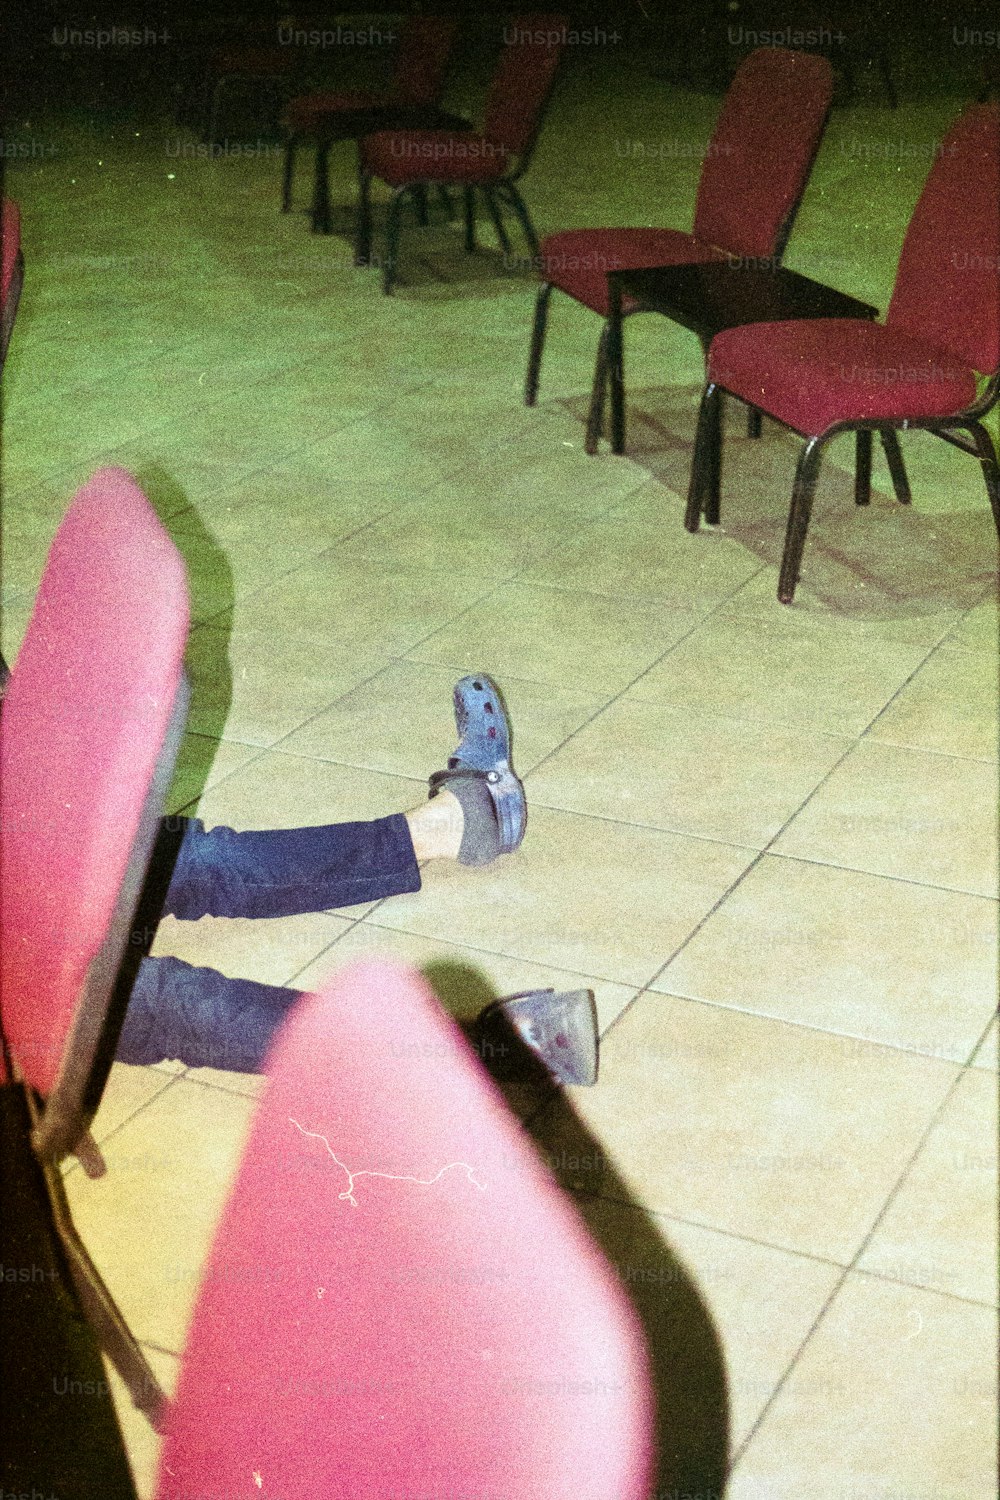 una persona sdraiata a terra con i piedi su una sedia